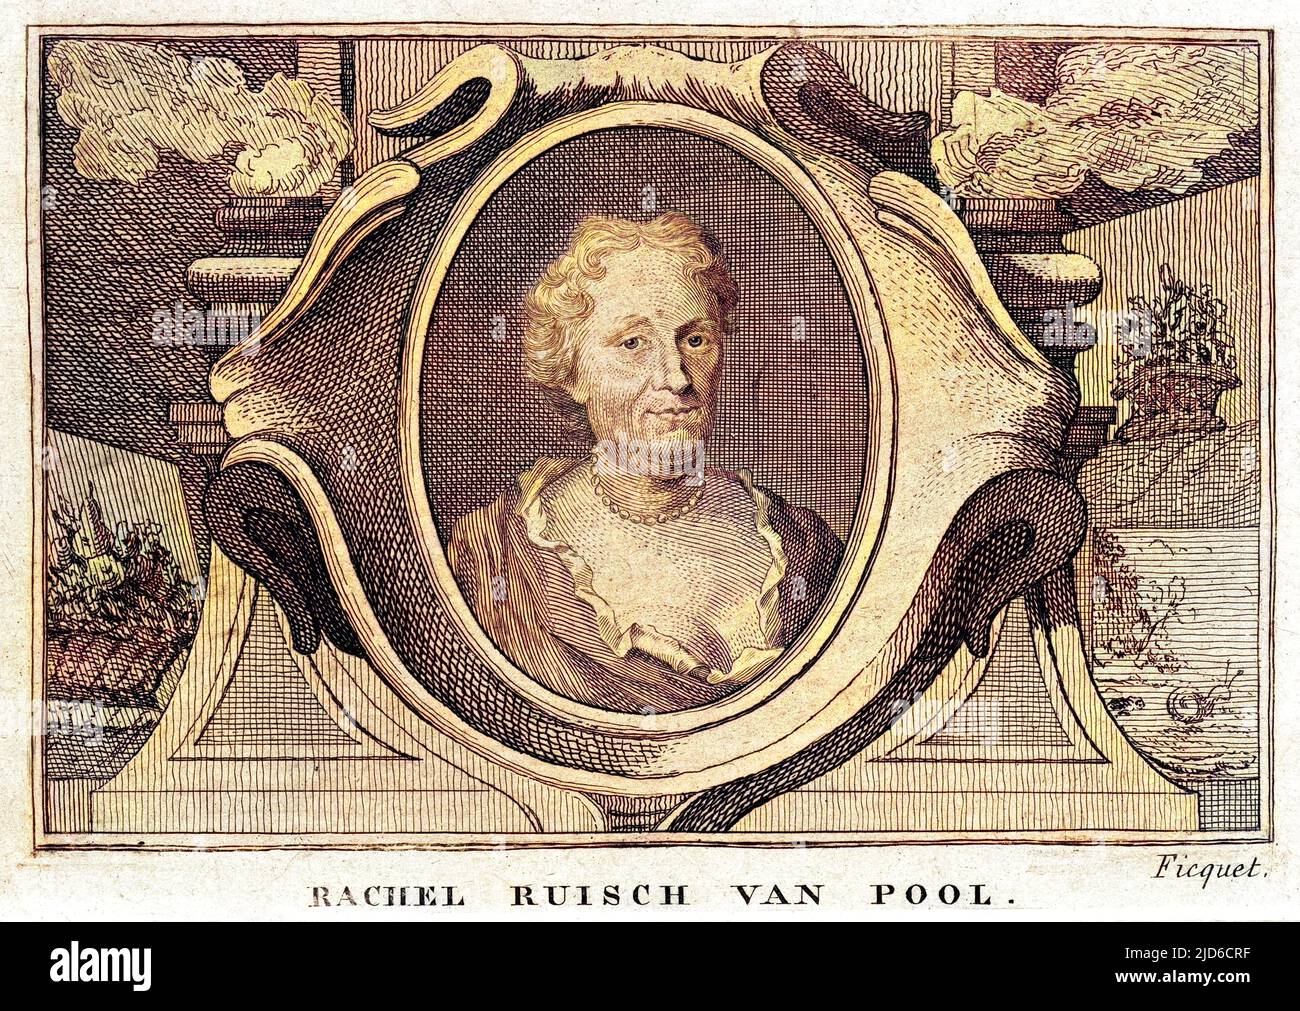 RACHEL RUYSCH VAN POOL artista olandese rinomato per i suoi dipinti di fiori. Versione colorata di : 10172886 Data: 1664 - 1750 Foto Stock